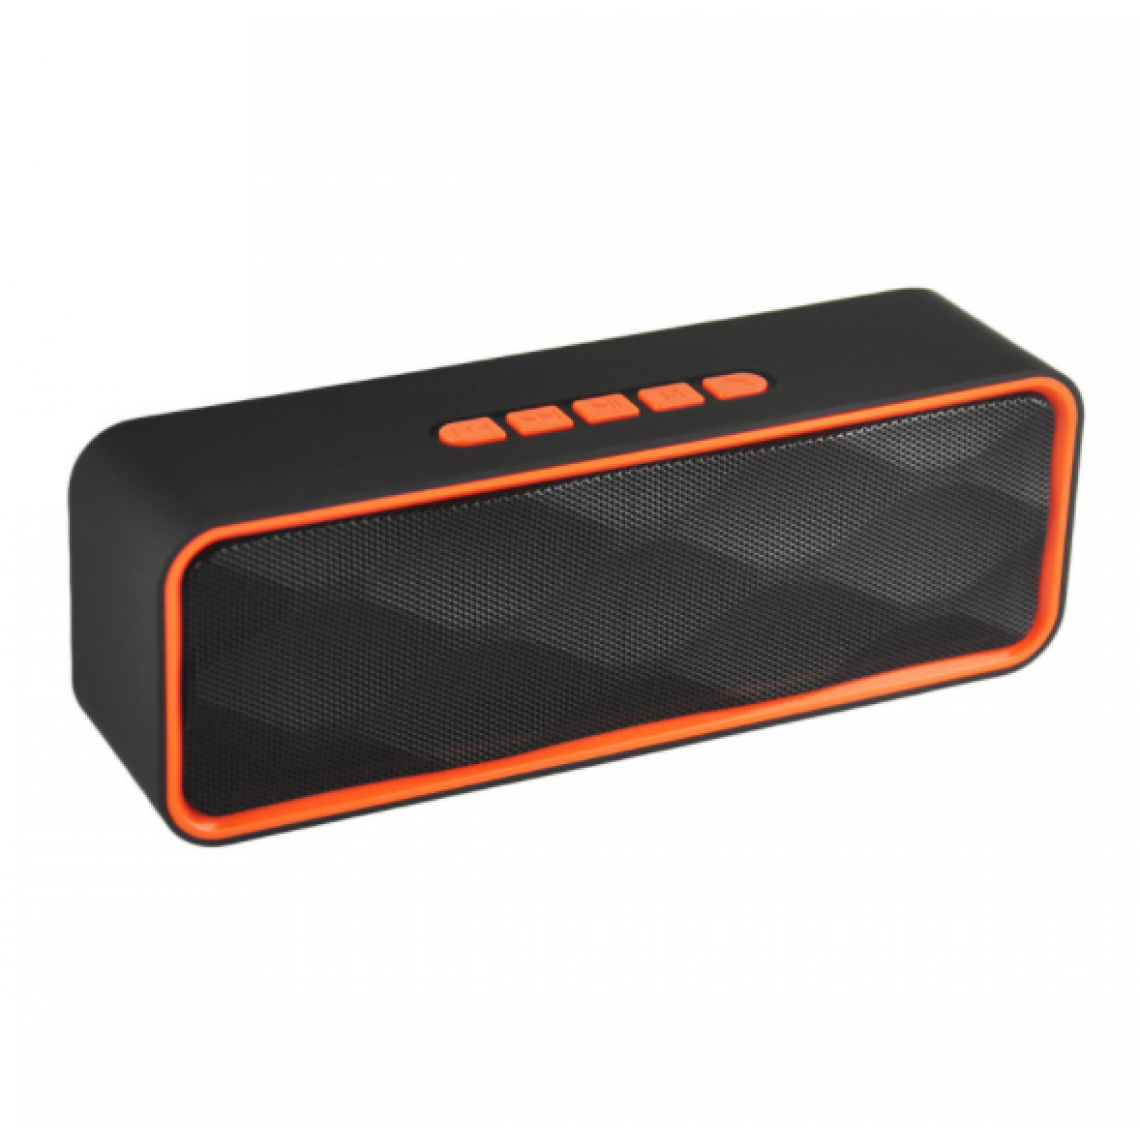 Chrono - Haut-parleurs Bluetooth sans fil, haut-parleurs stéréo portables V4.6 avec double pilote et haut-parleur intégrés, audio HD et radio FM(Orange) - Enceintes Hifi